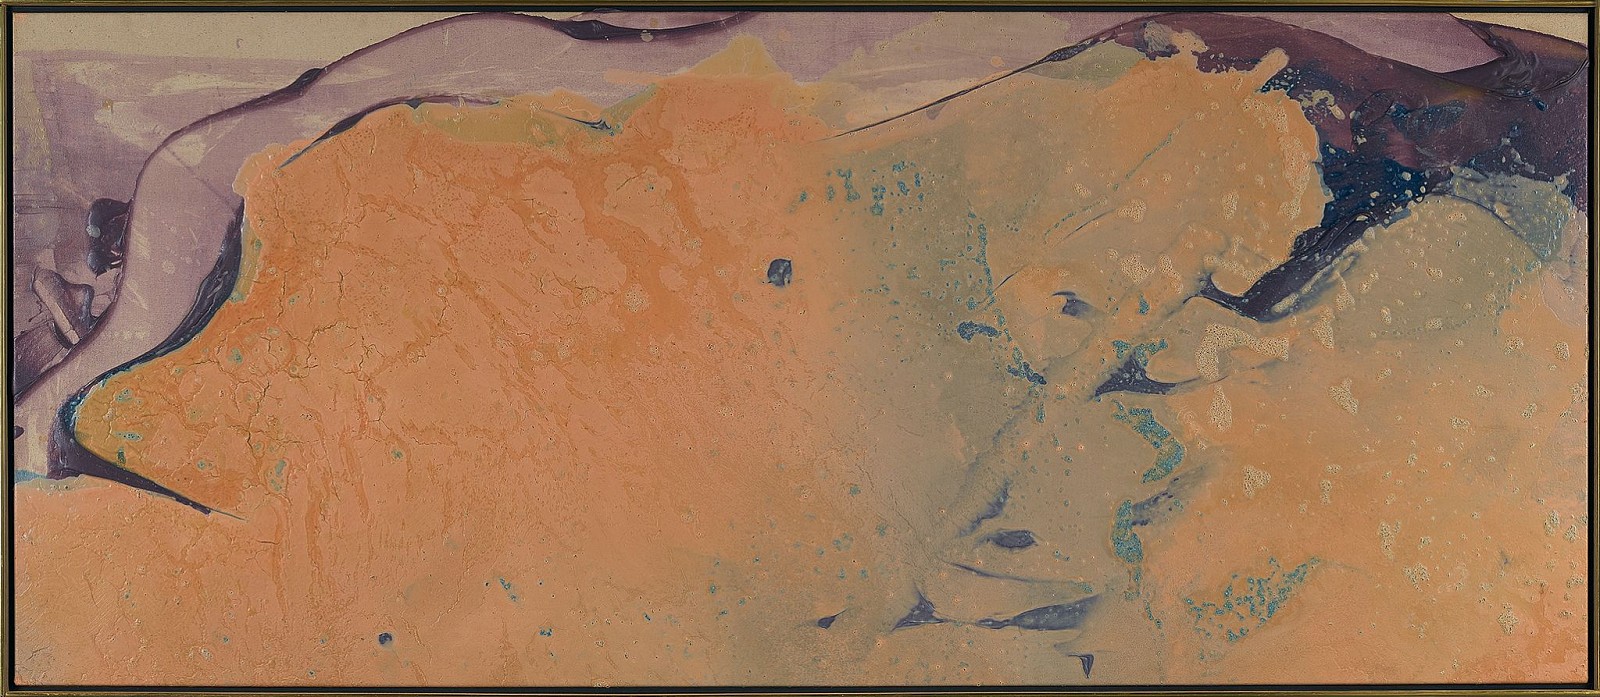 Walter Darby Bannard, Algerian, 1978
Acrylic on canvas, 32 x 78 in. (81.3 x 198.1 cm)
BAN-00114